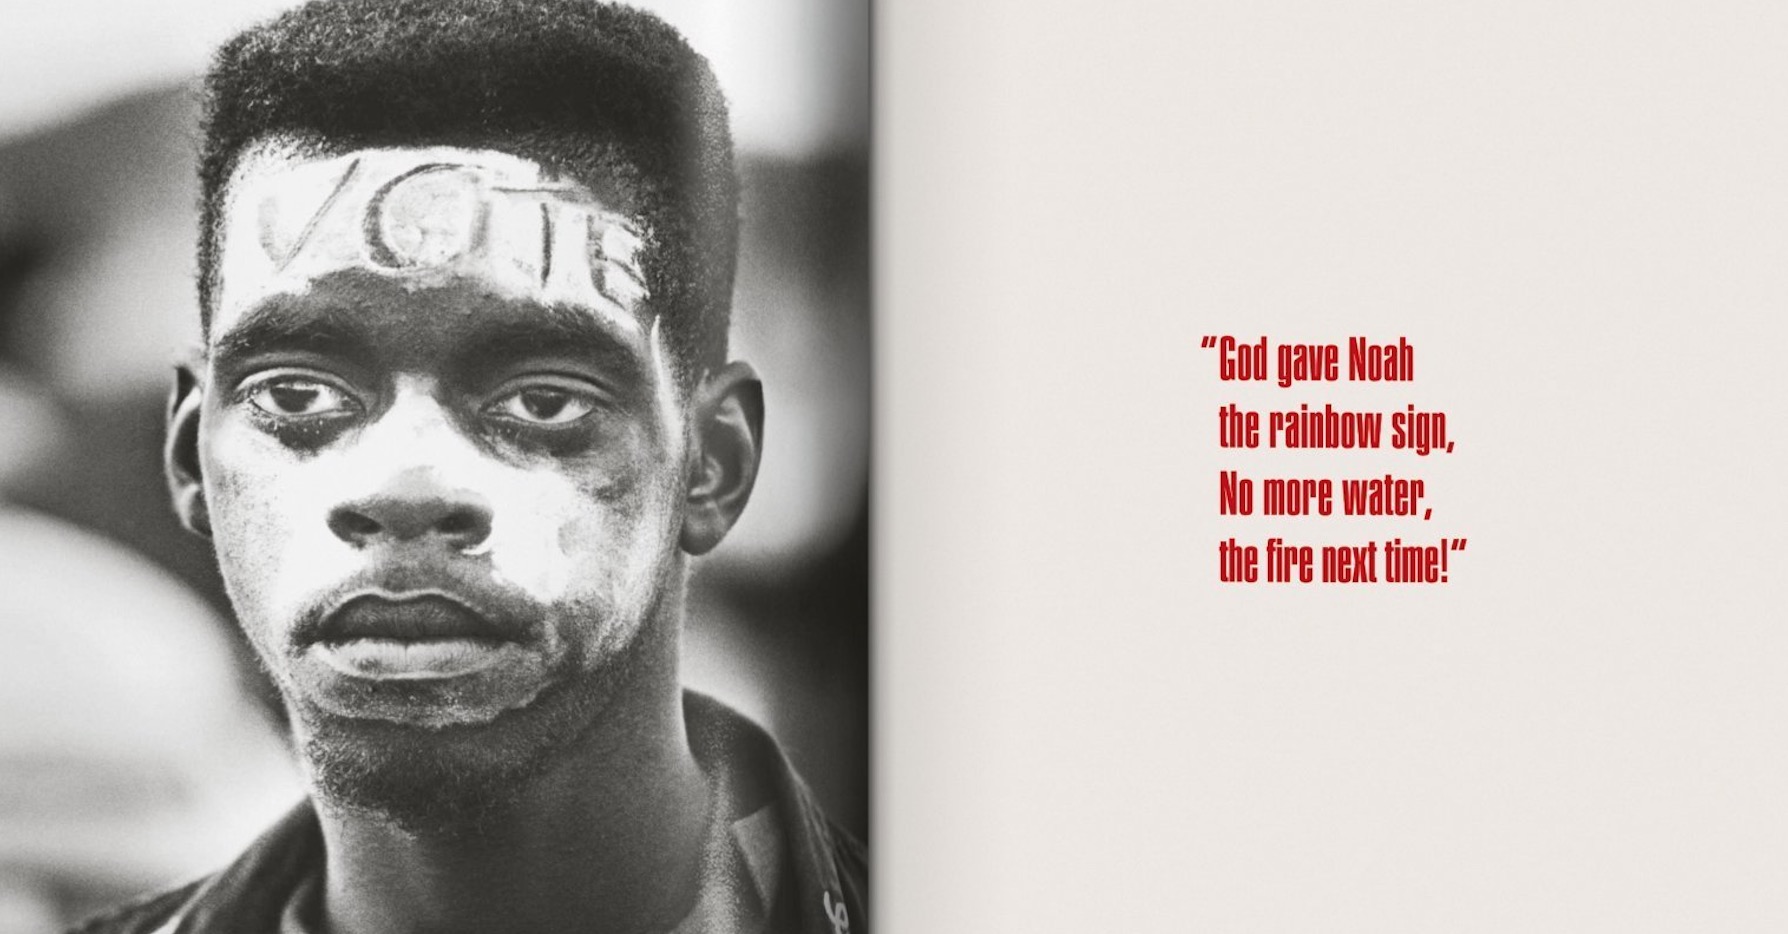 Taschen reedita 1.963 exemplars de “The Fire Next time” de James Baldwin amb fotos de Steve Schapiro